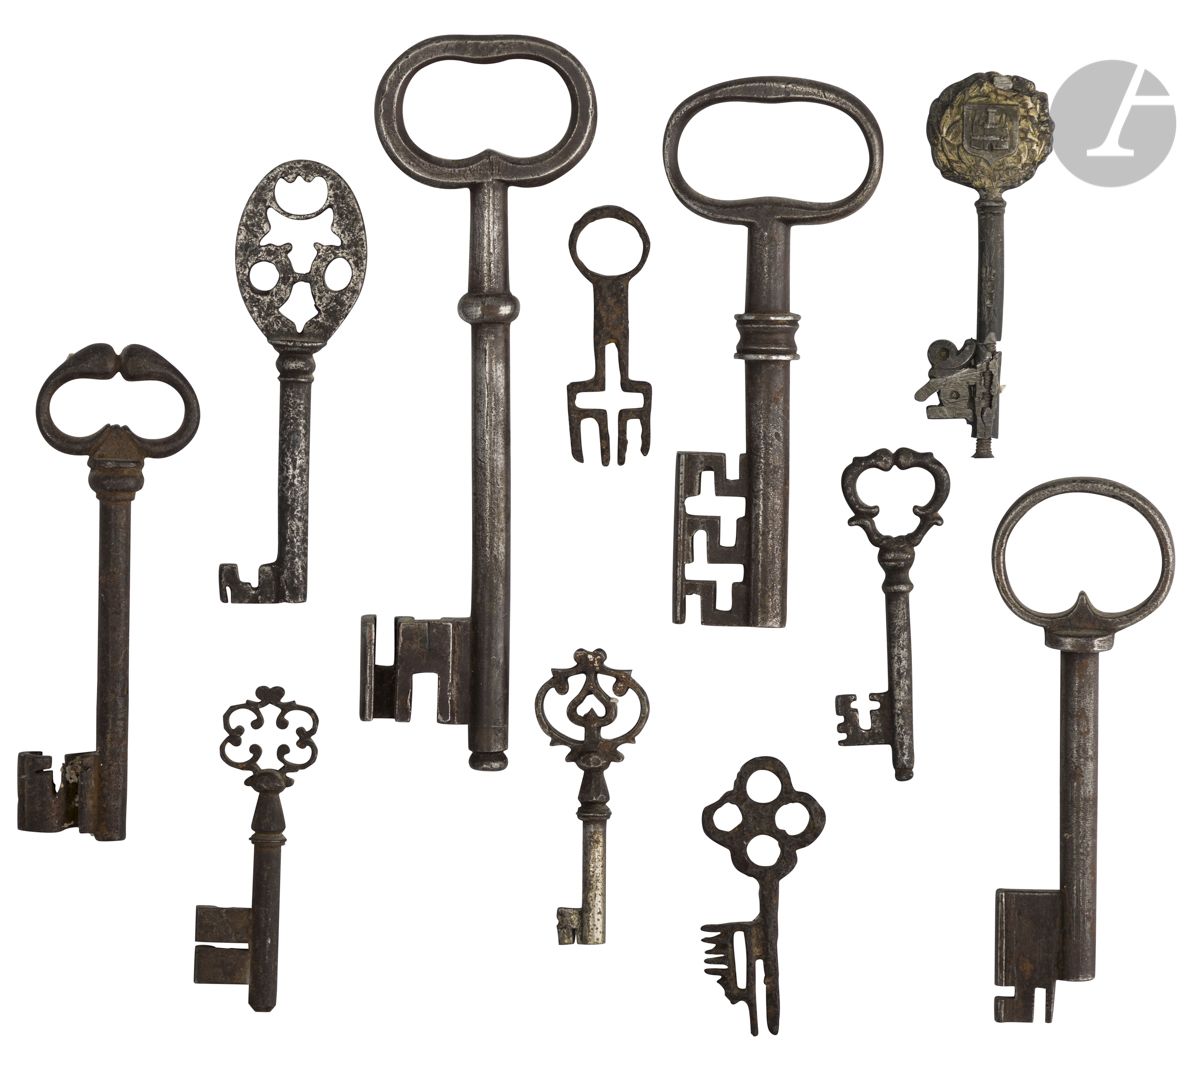 Null 一套11把不同型号和时期的铁钥匙。
17-18世纪。
长：6厘米和17厘米之间